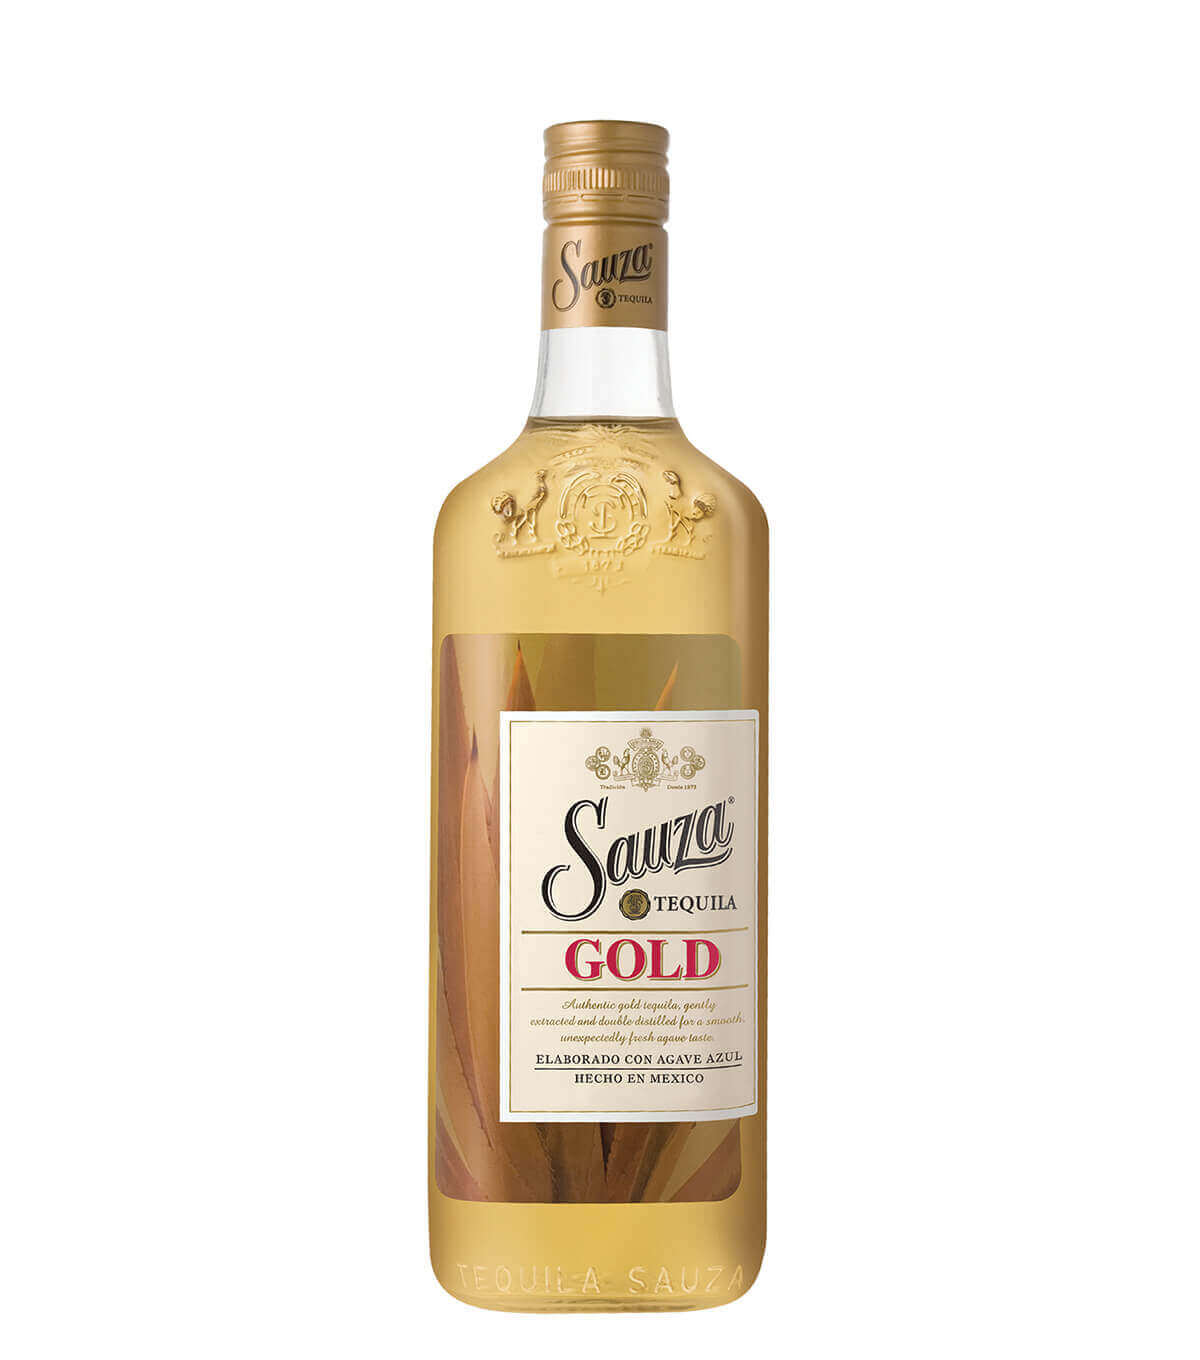 Текила сауза голд. Текила Sauza 0,5 38% Gold. Сауза Голд. Виски Sauza. Sauza Gold, Silver 1l.